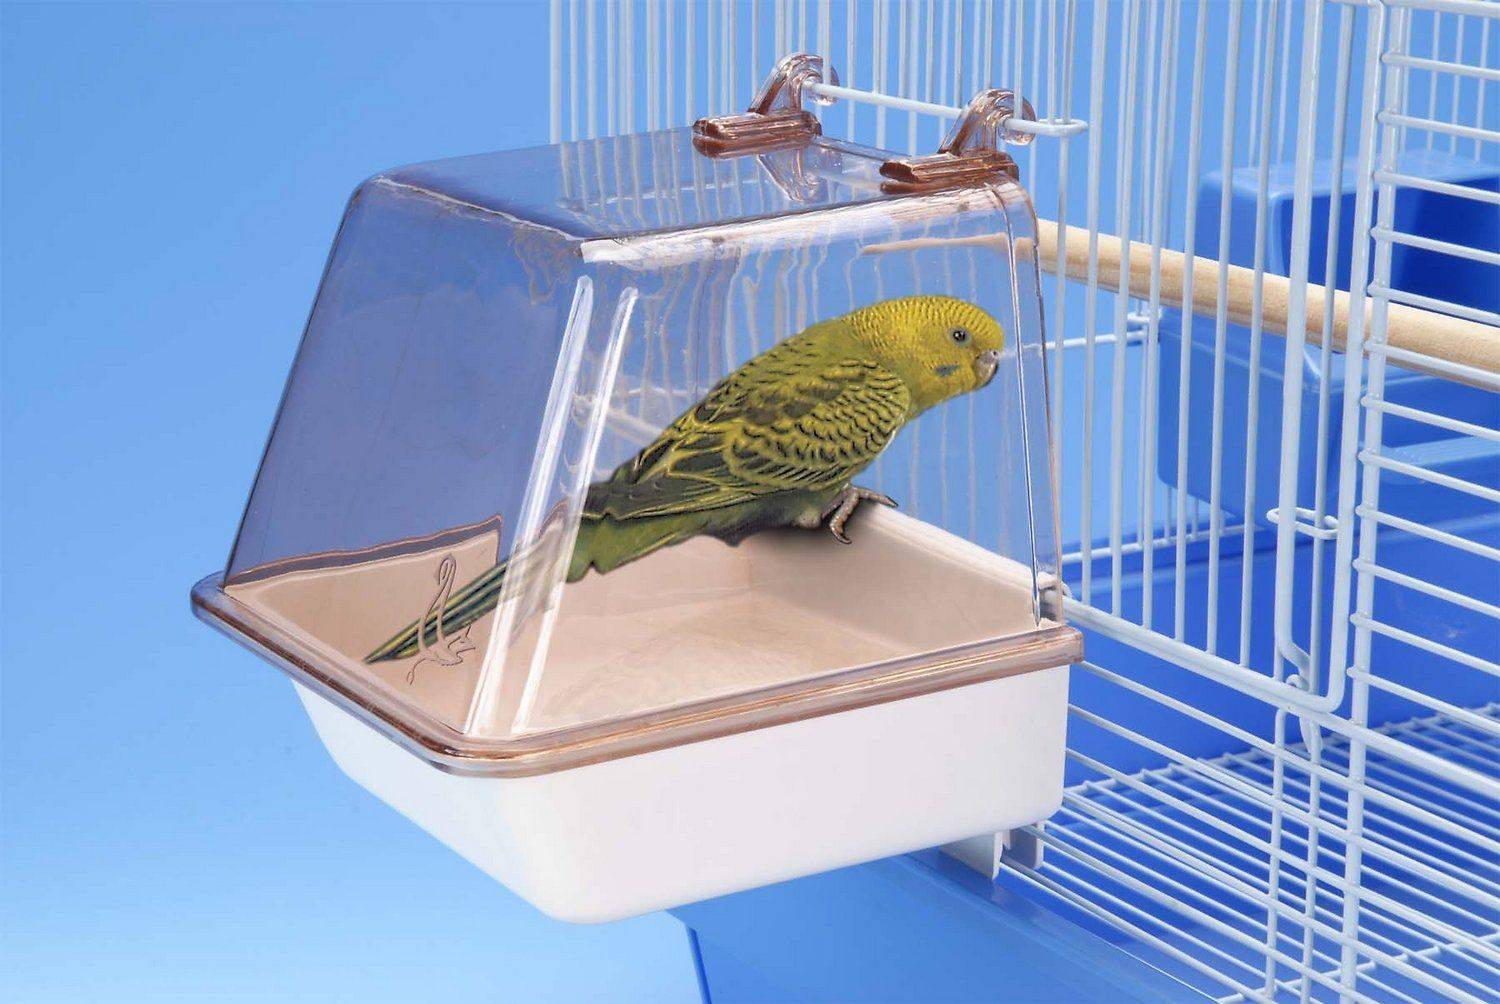 Купалка для попугаев: какие виды ванночек можно использовать, как сделать своими руками